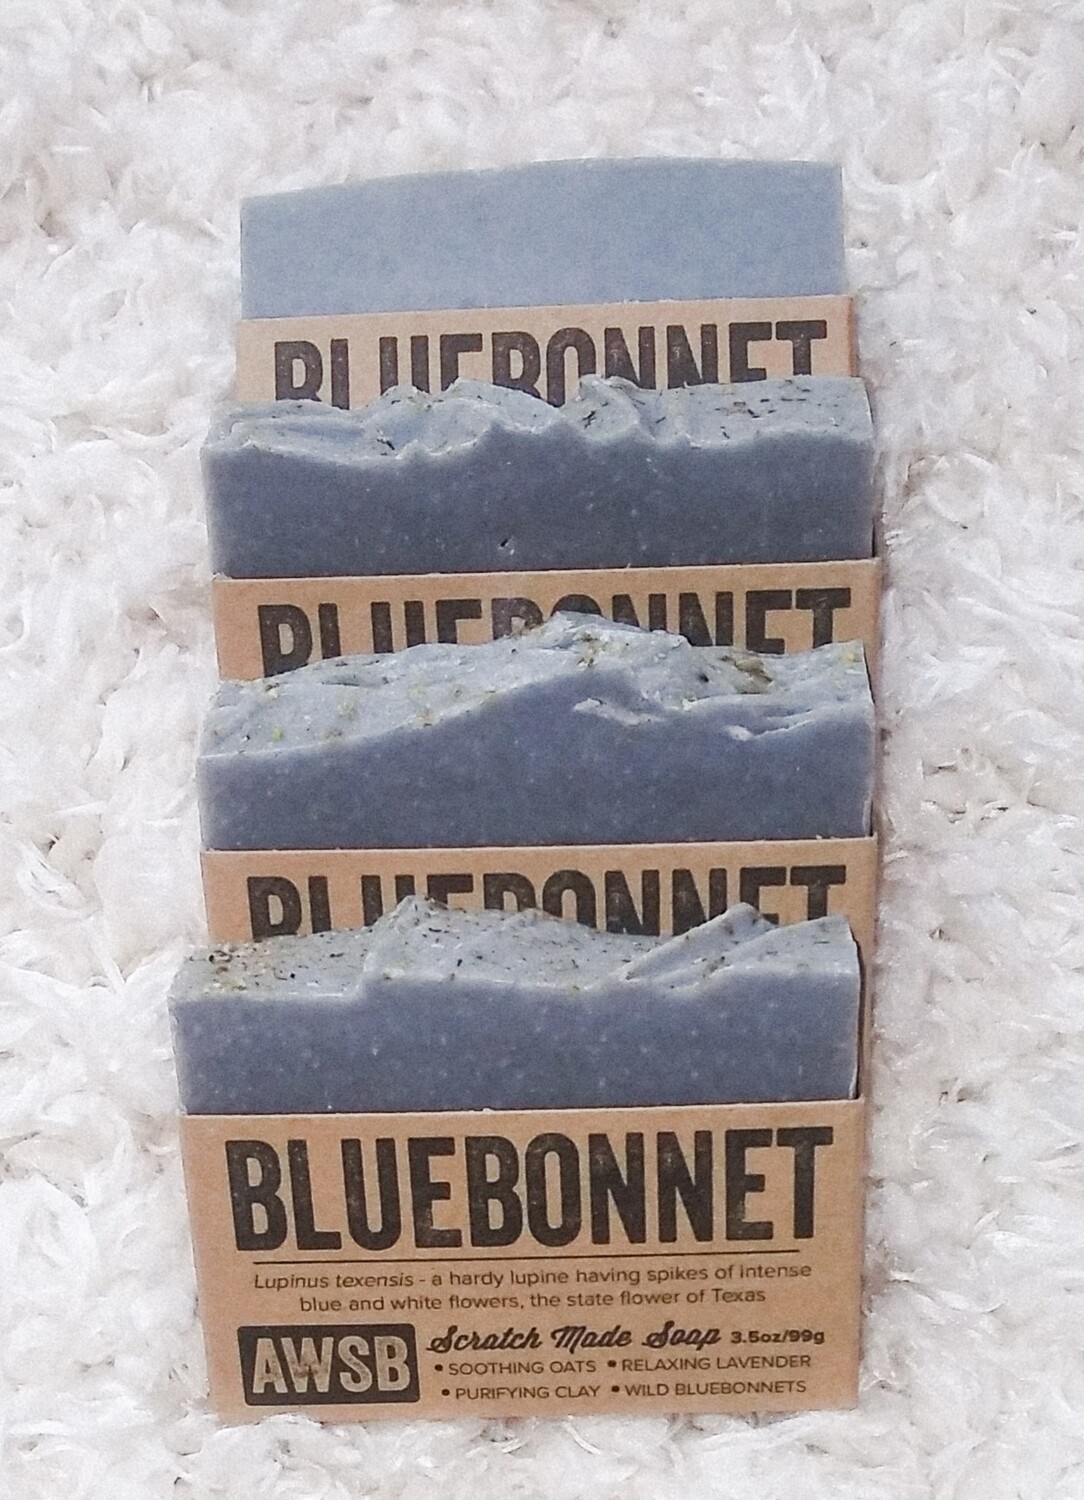 Bluebonnet soap